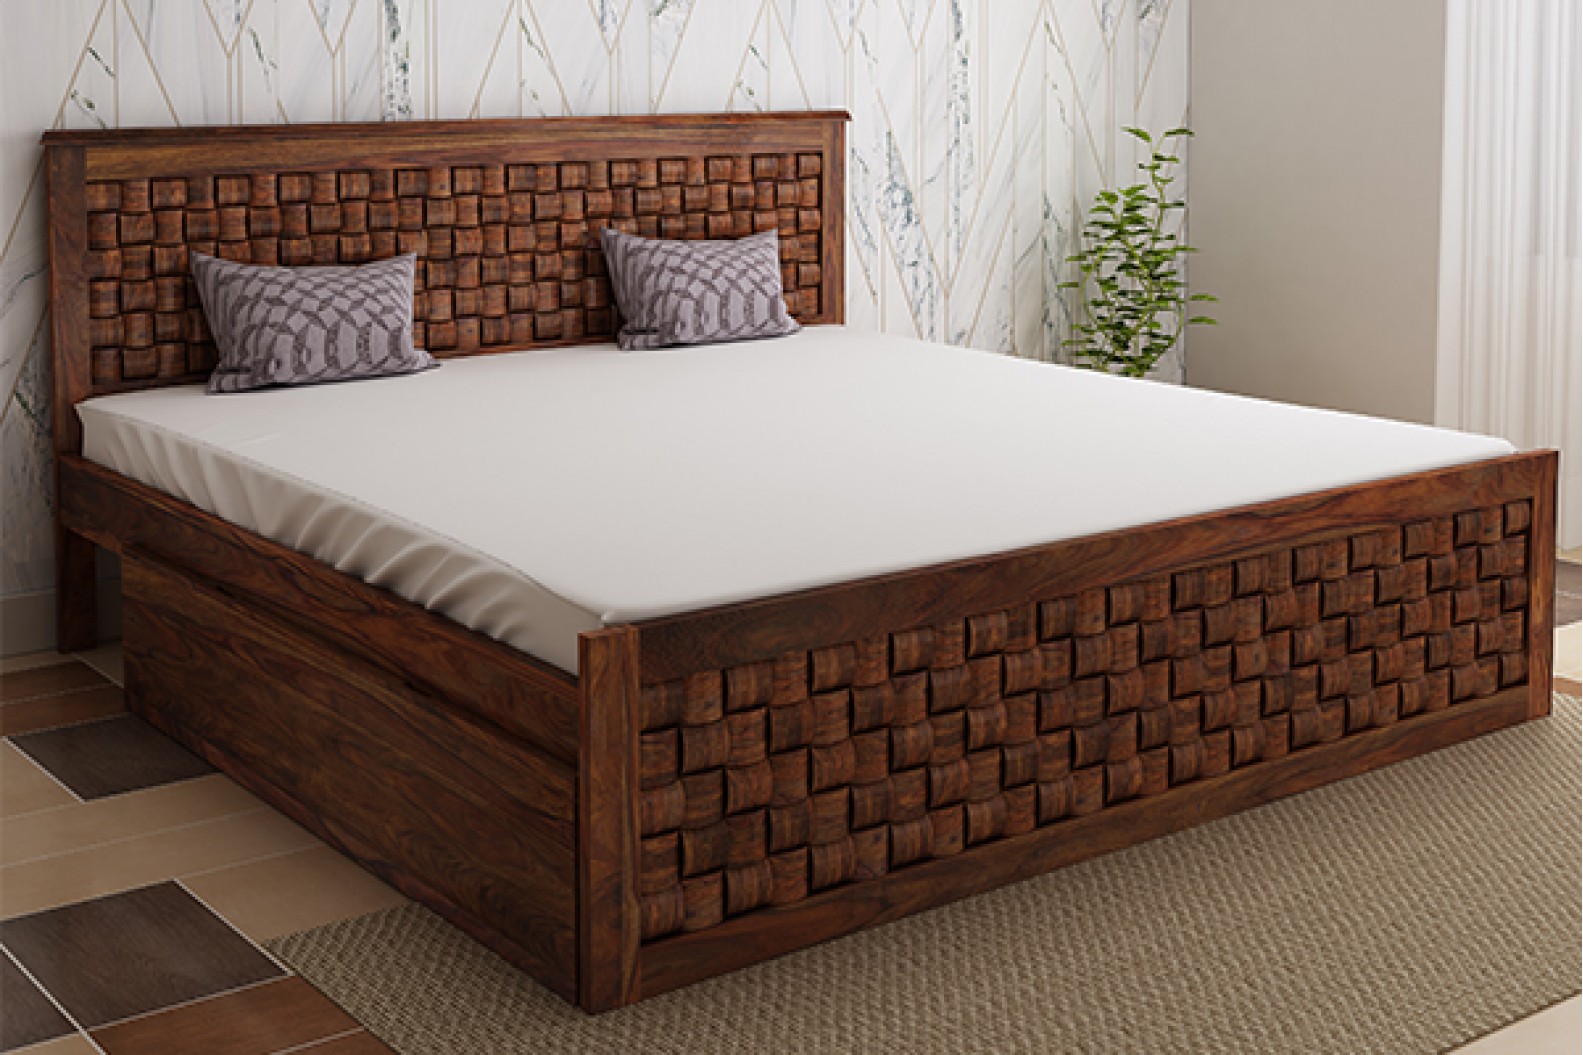 Queen Size Bed: Buy Wooden Queen Beds Online At Best Prices - PlusOne India